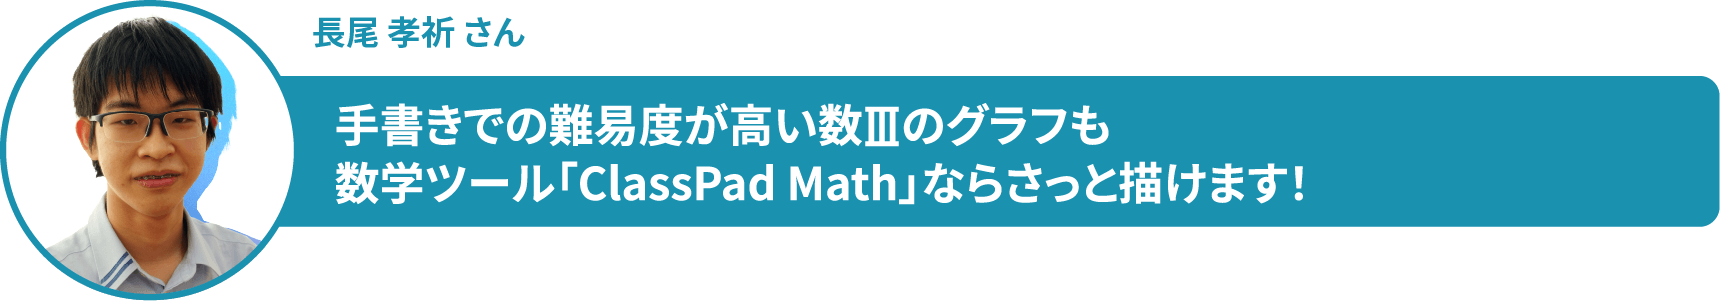 長尾 孝祈 さん 手書きでの難易度が高い数Ⅲのグラフも 数学ツール「ClassPad Math」ならさっと描けます！